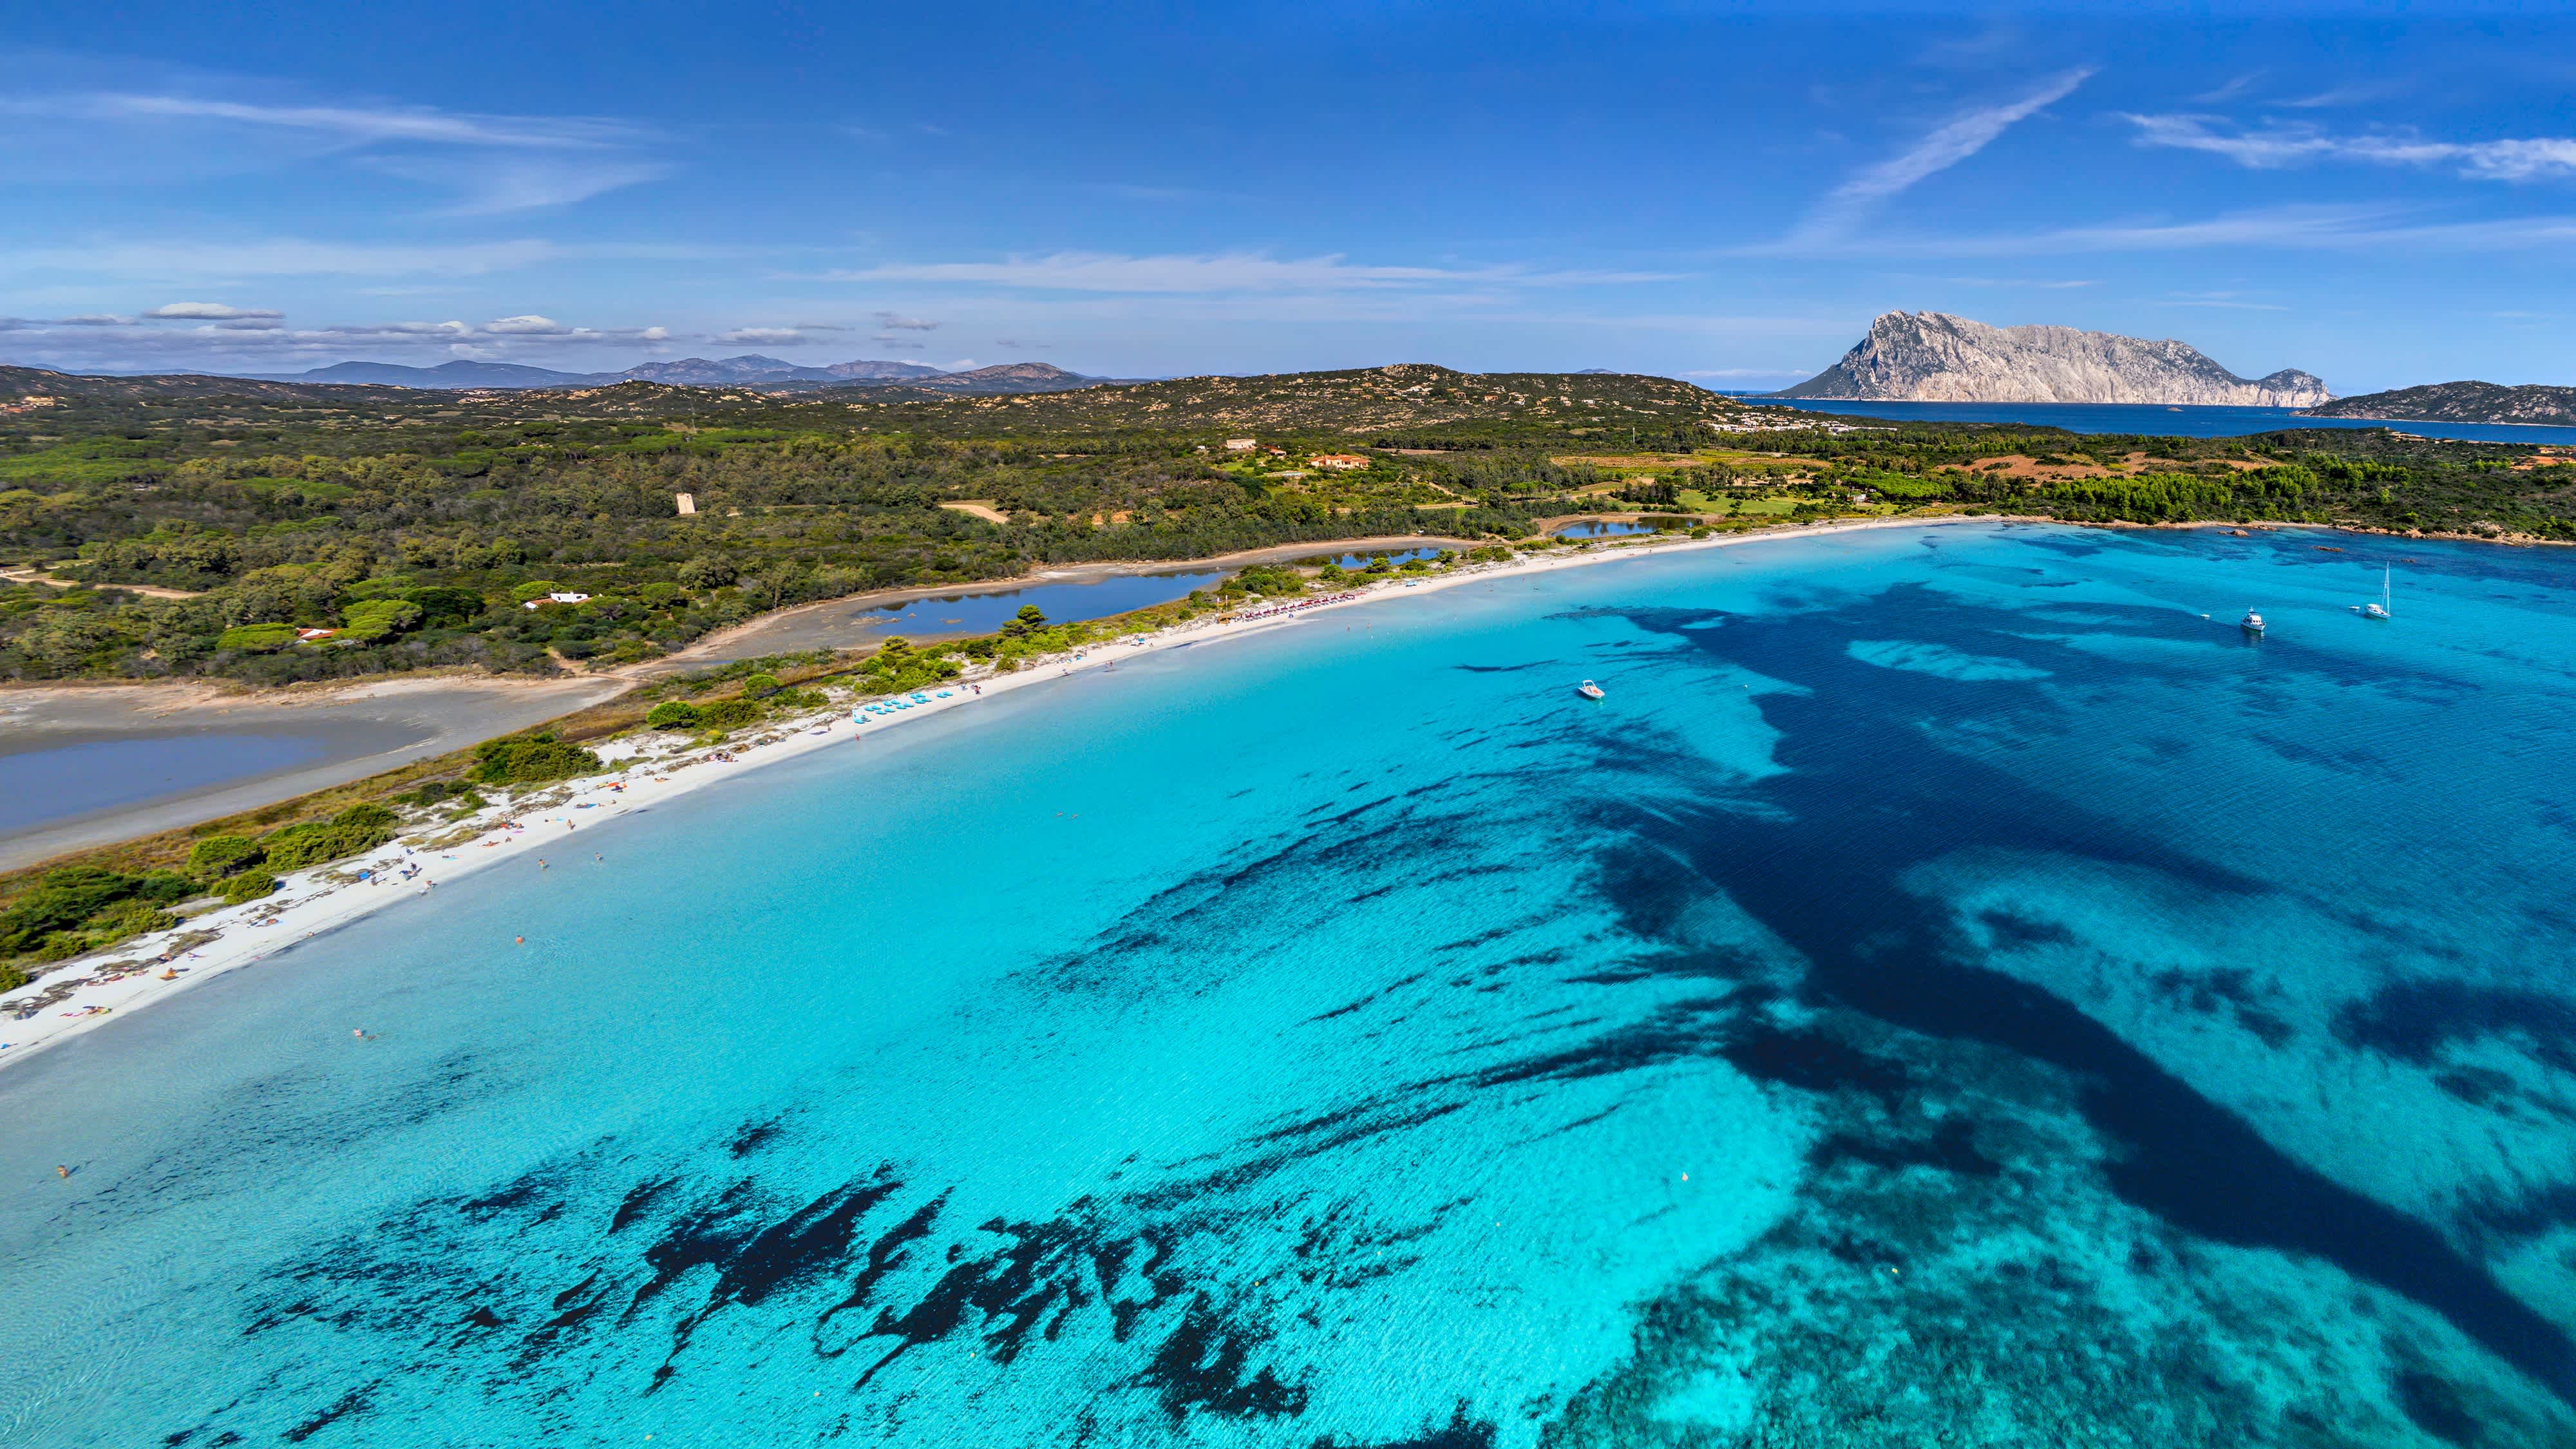 Luftaufnahme von Cala Brandinchi in Sardinien, Italien mit Überblick der Küstenlinie sowie entfernten Inseln.

